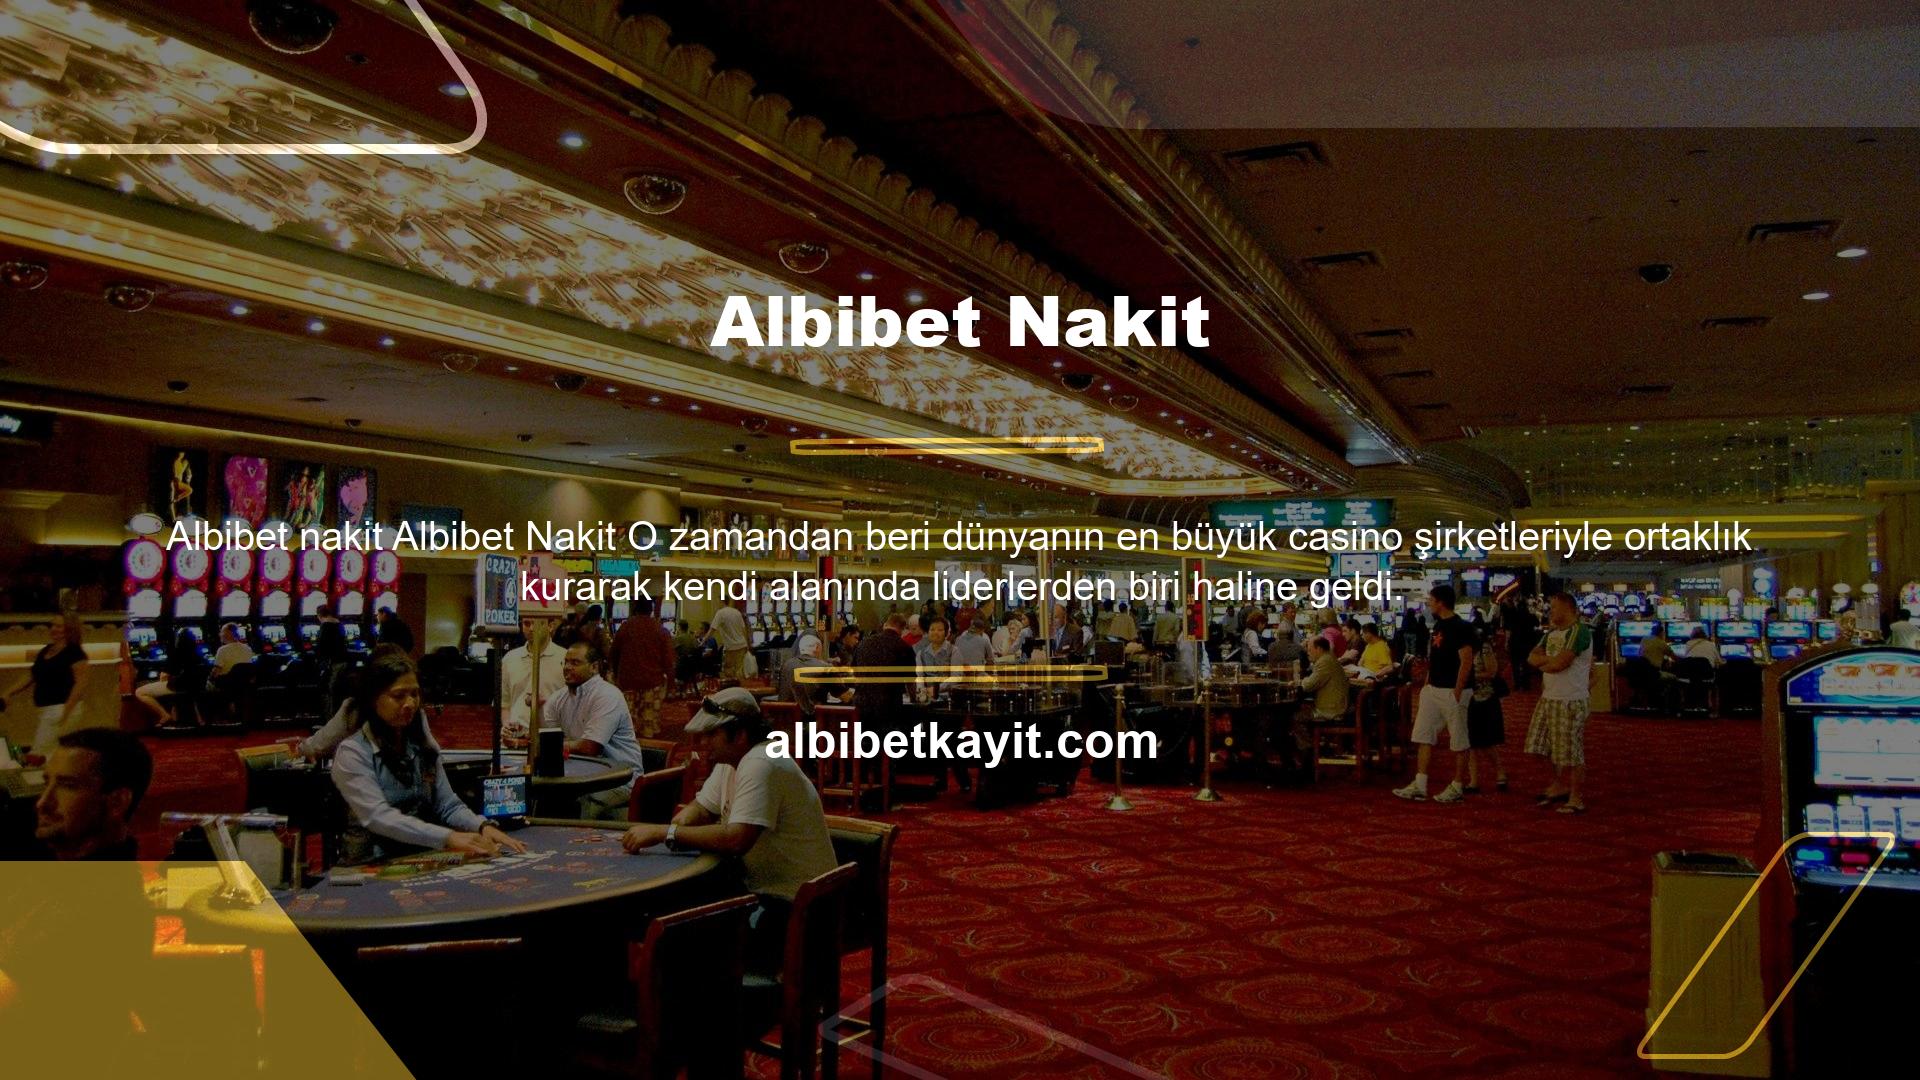 Albibet canlı casino masaları, kullanıcılara oyun oynama ve eğlenme fırsatı vermek için farklı oyun kategorilerinden klasik ve yeni nesil casino oyunları sunmaktadır